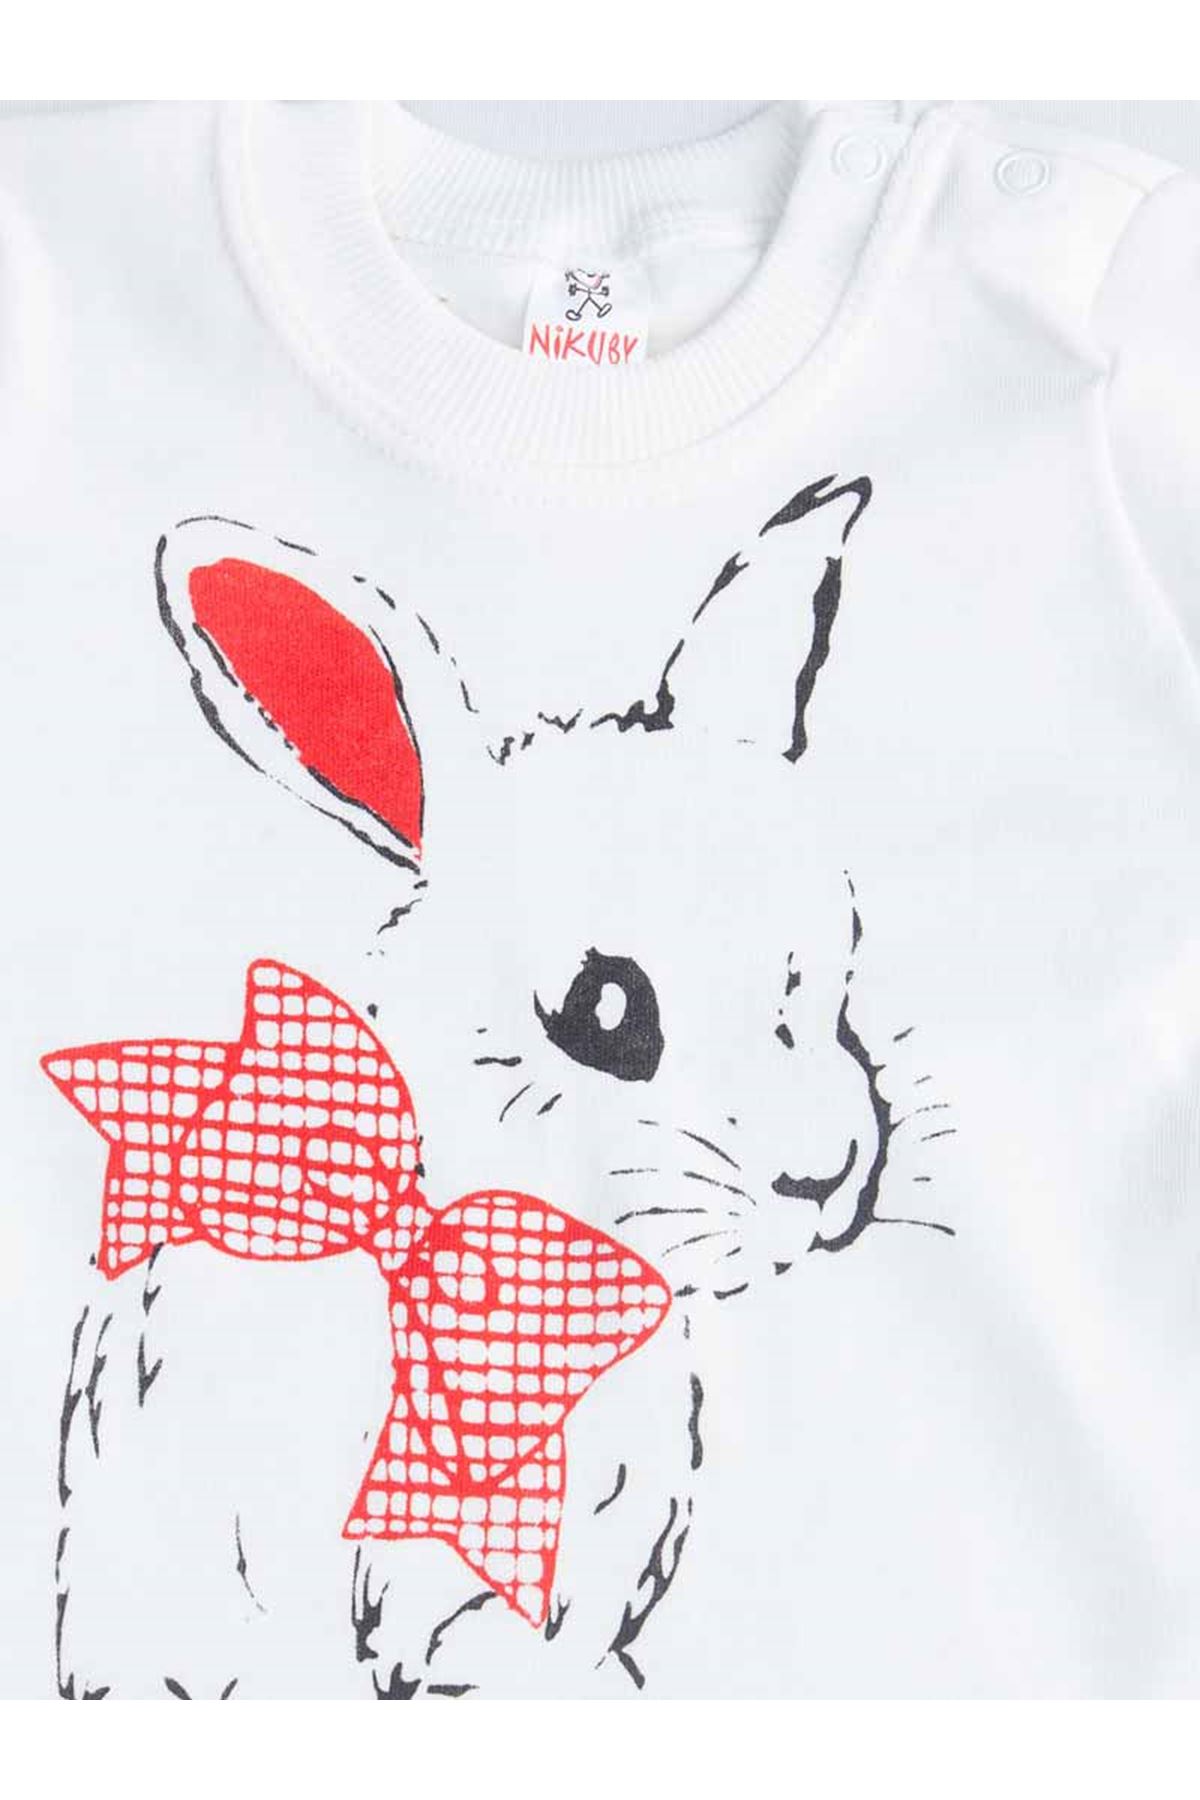 Red Tavşanlı Baby Girl Pajamas set